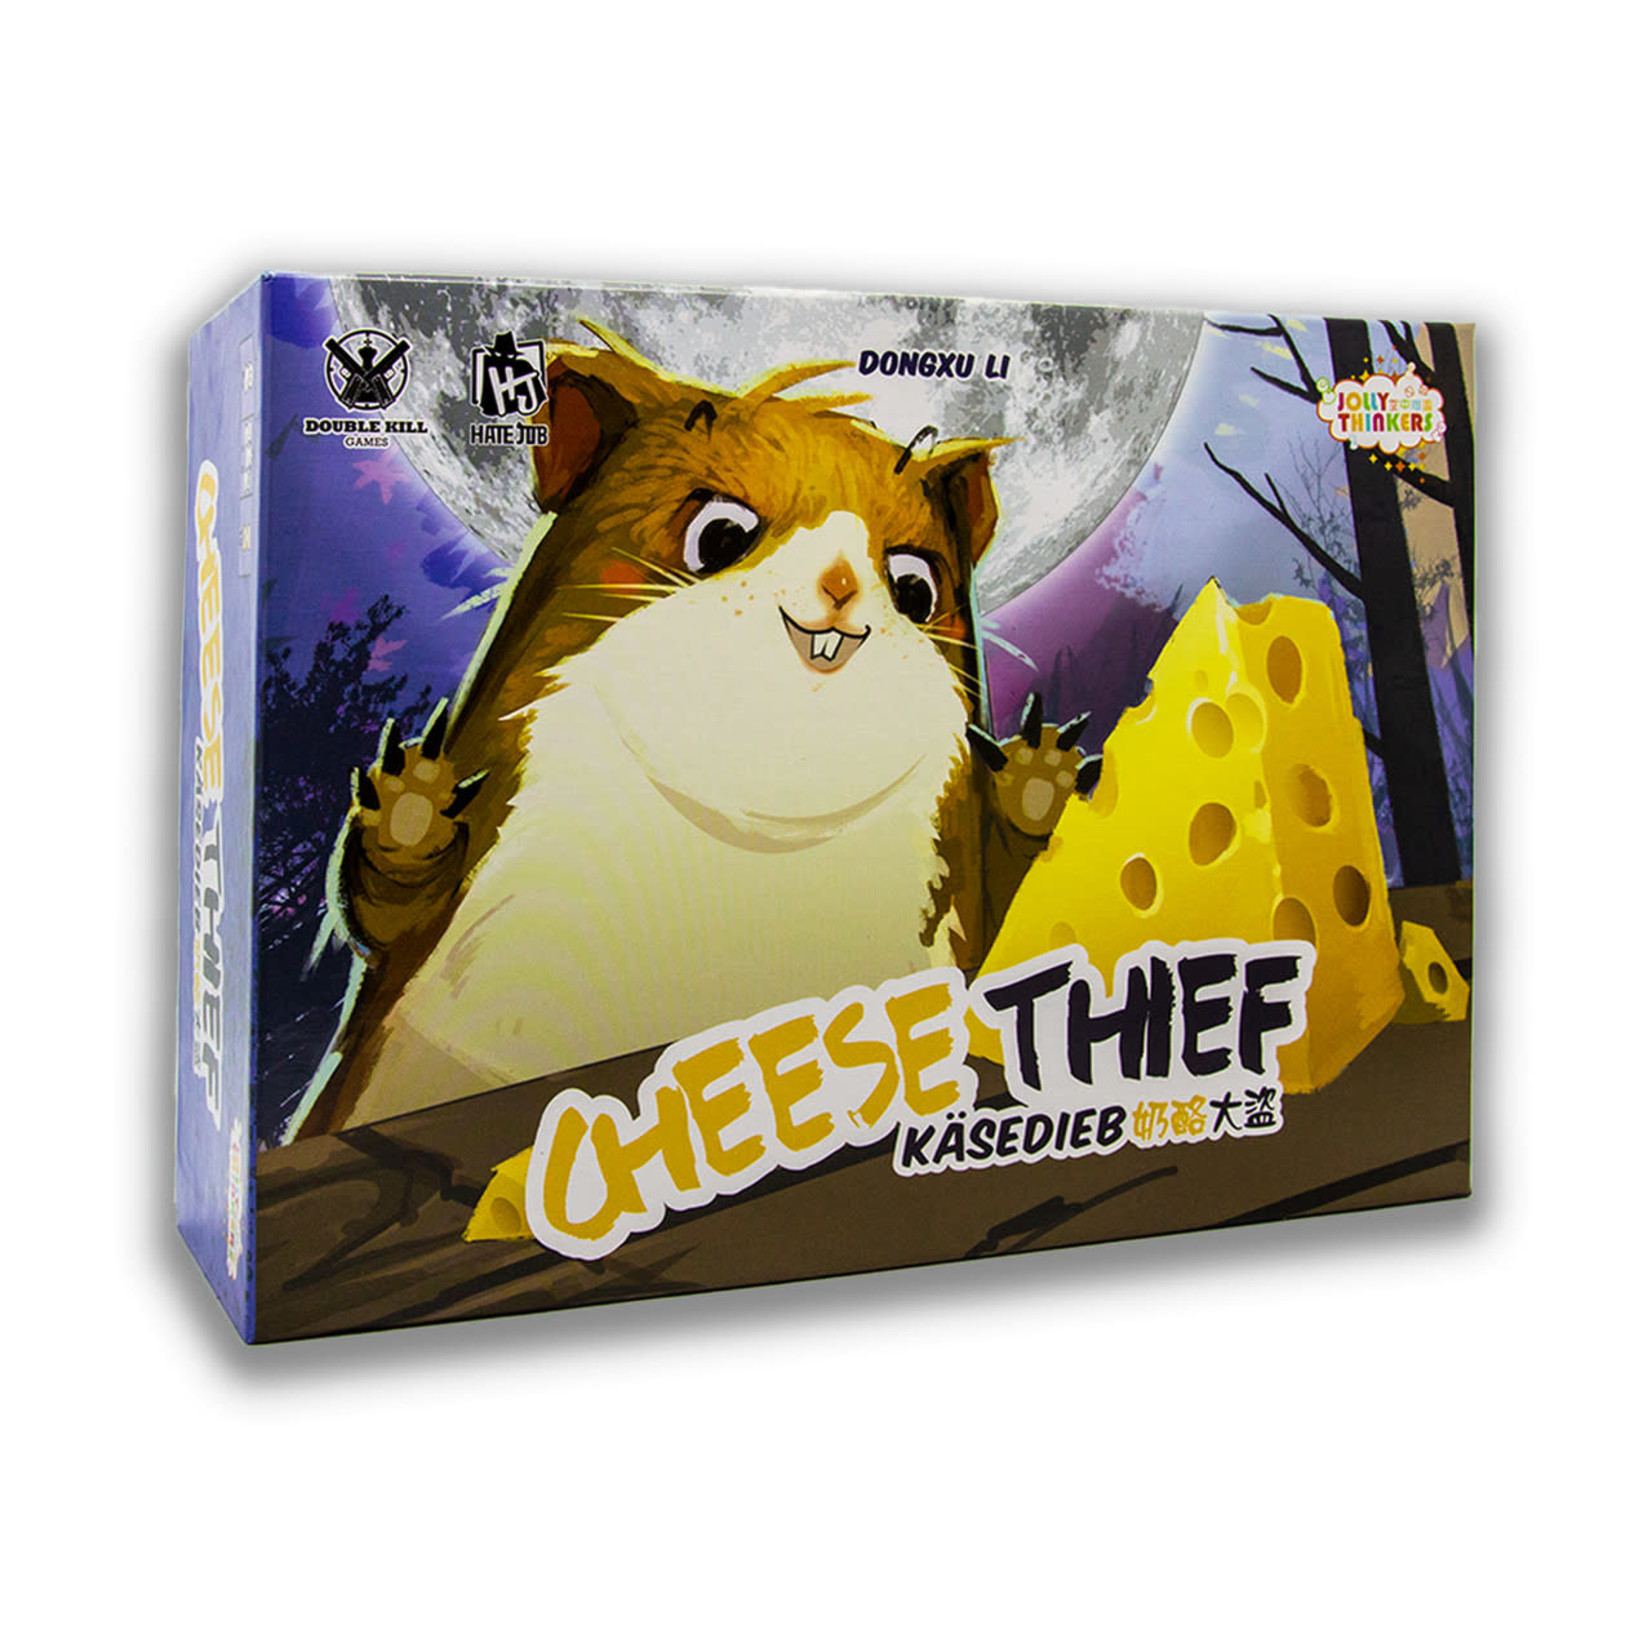 Cheese Thief